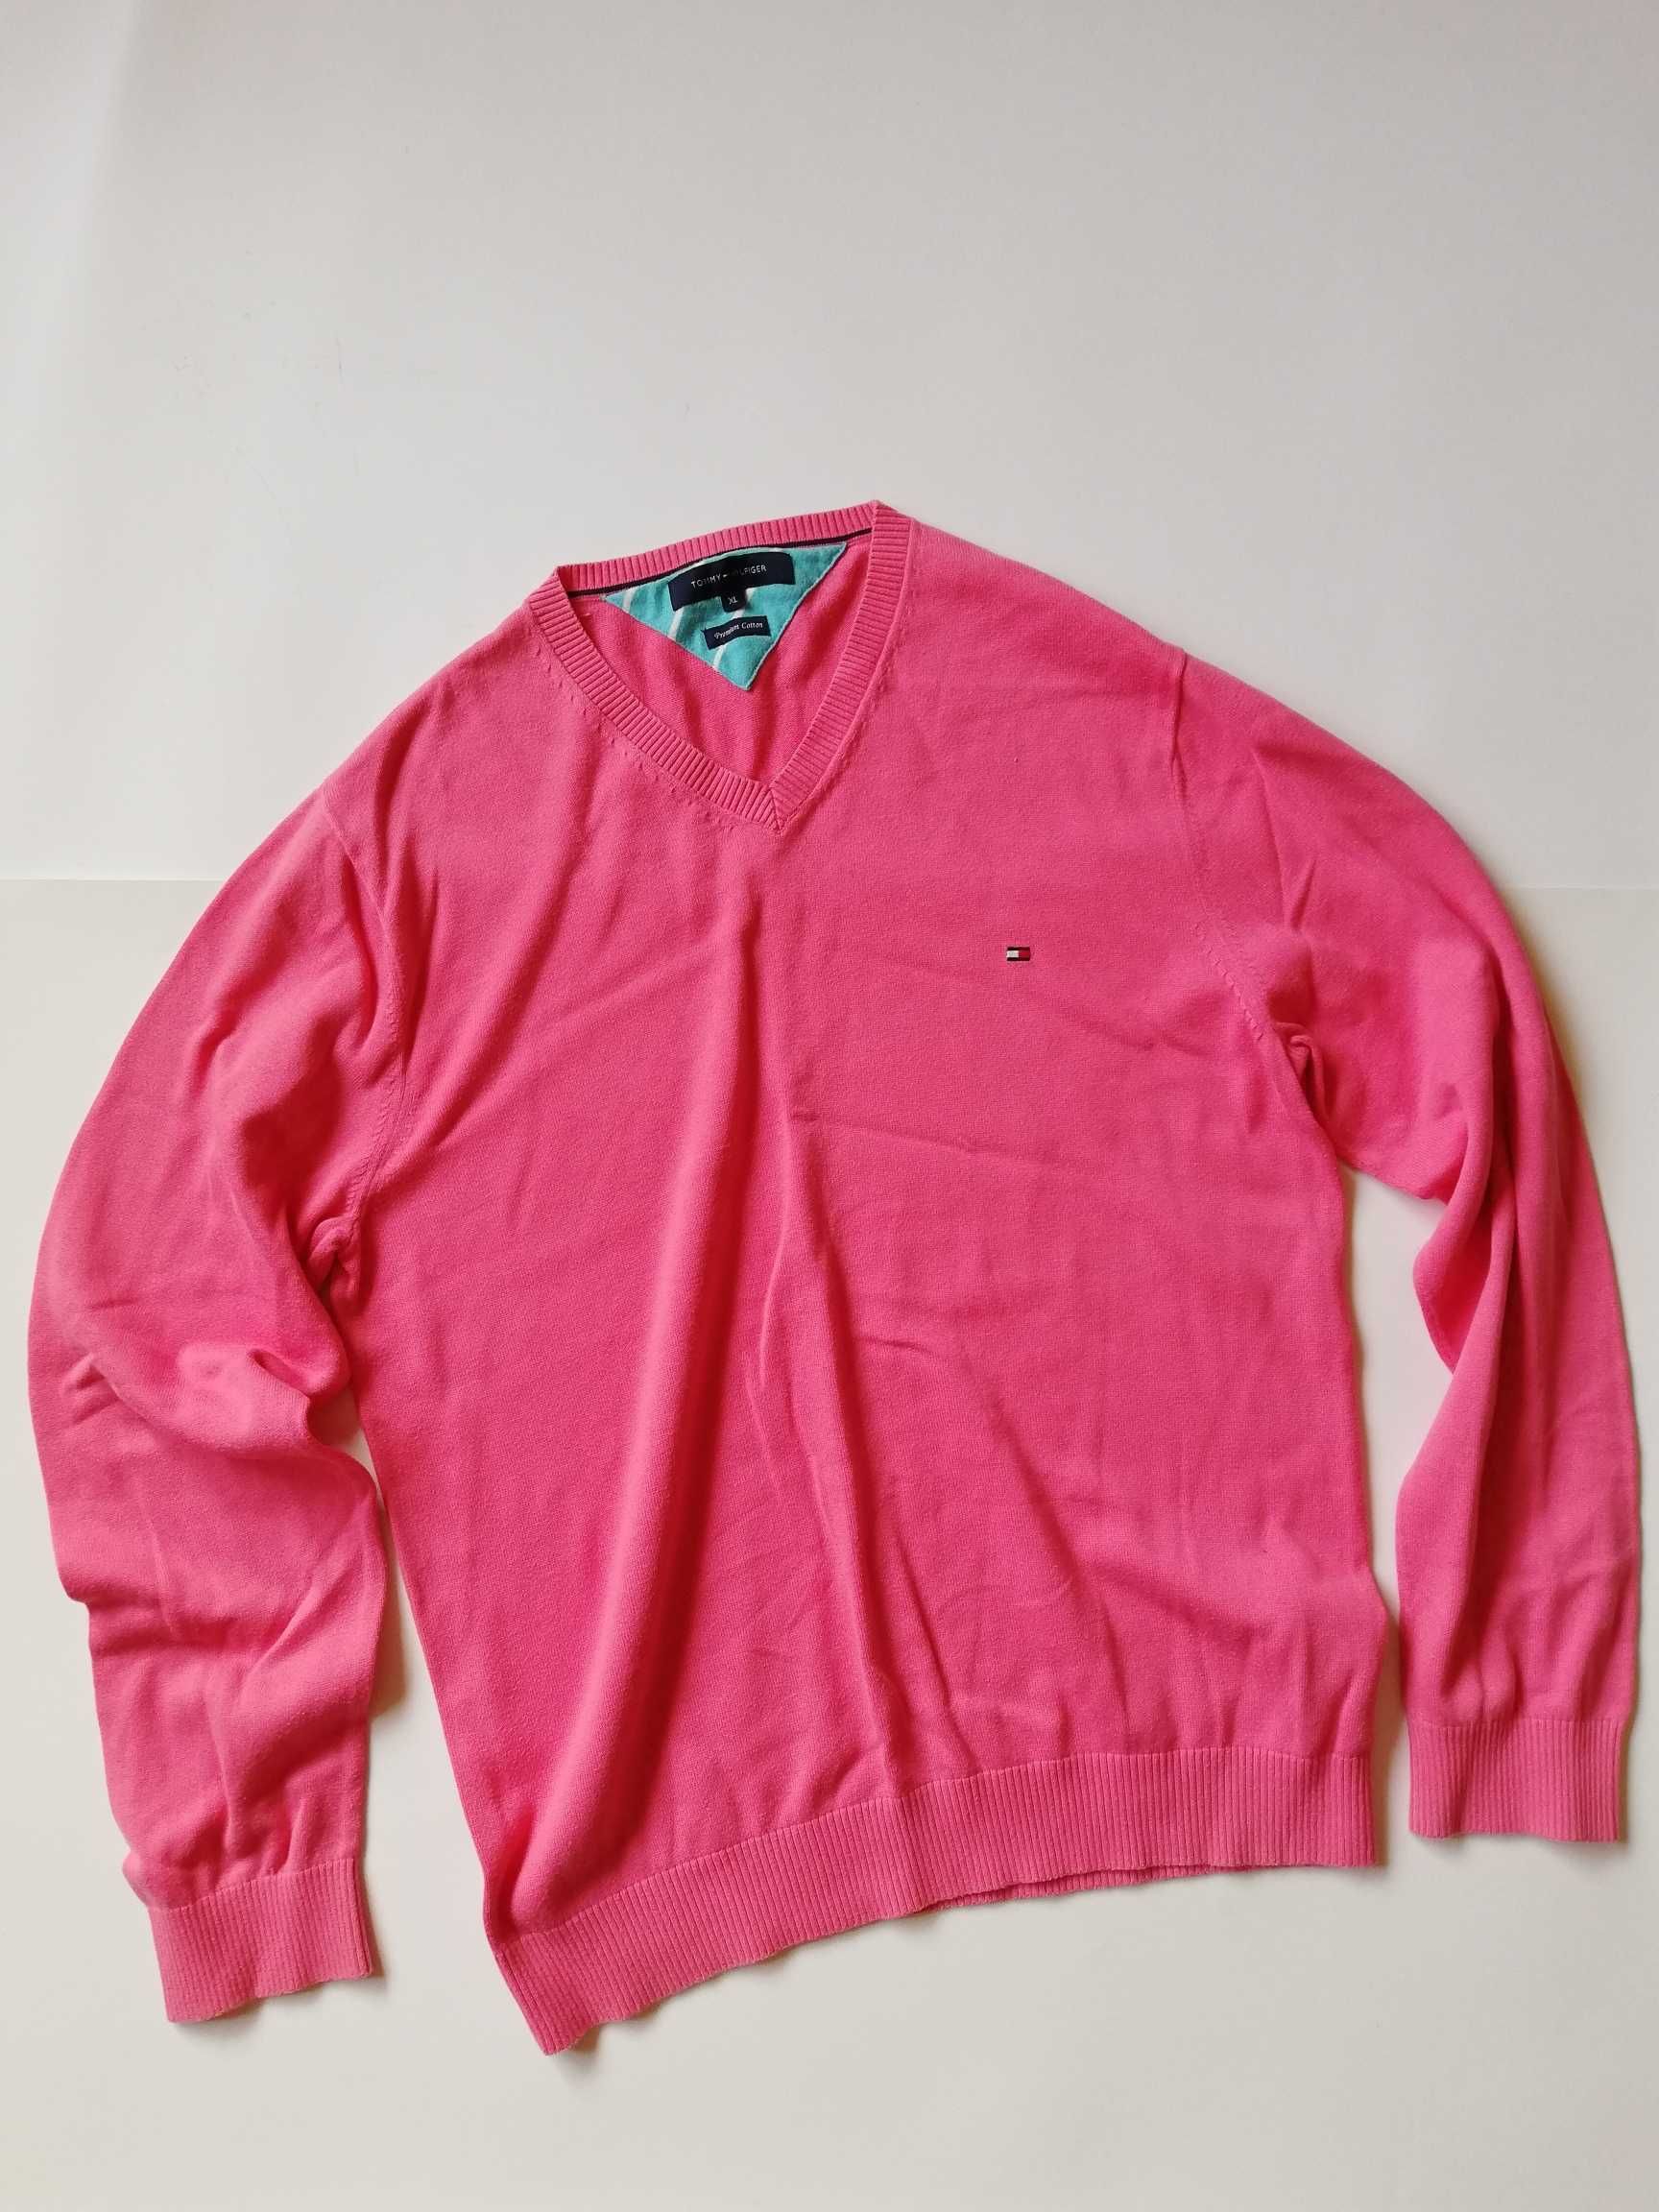 NEW Tommy Hilfiger - Premium Cotton Longsleve / Slim-Fit Shirt